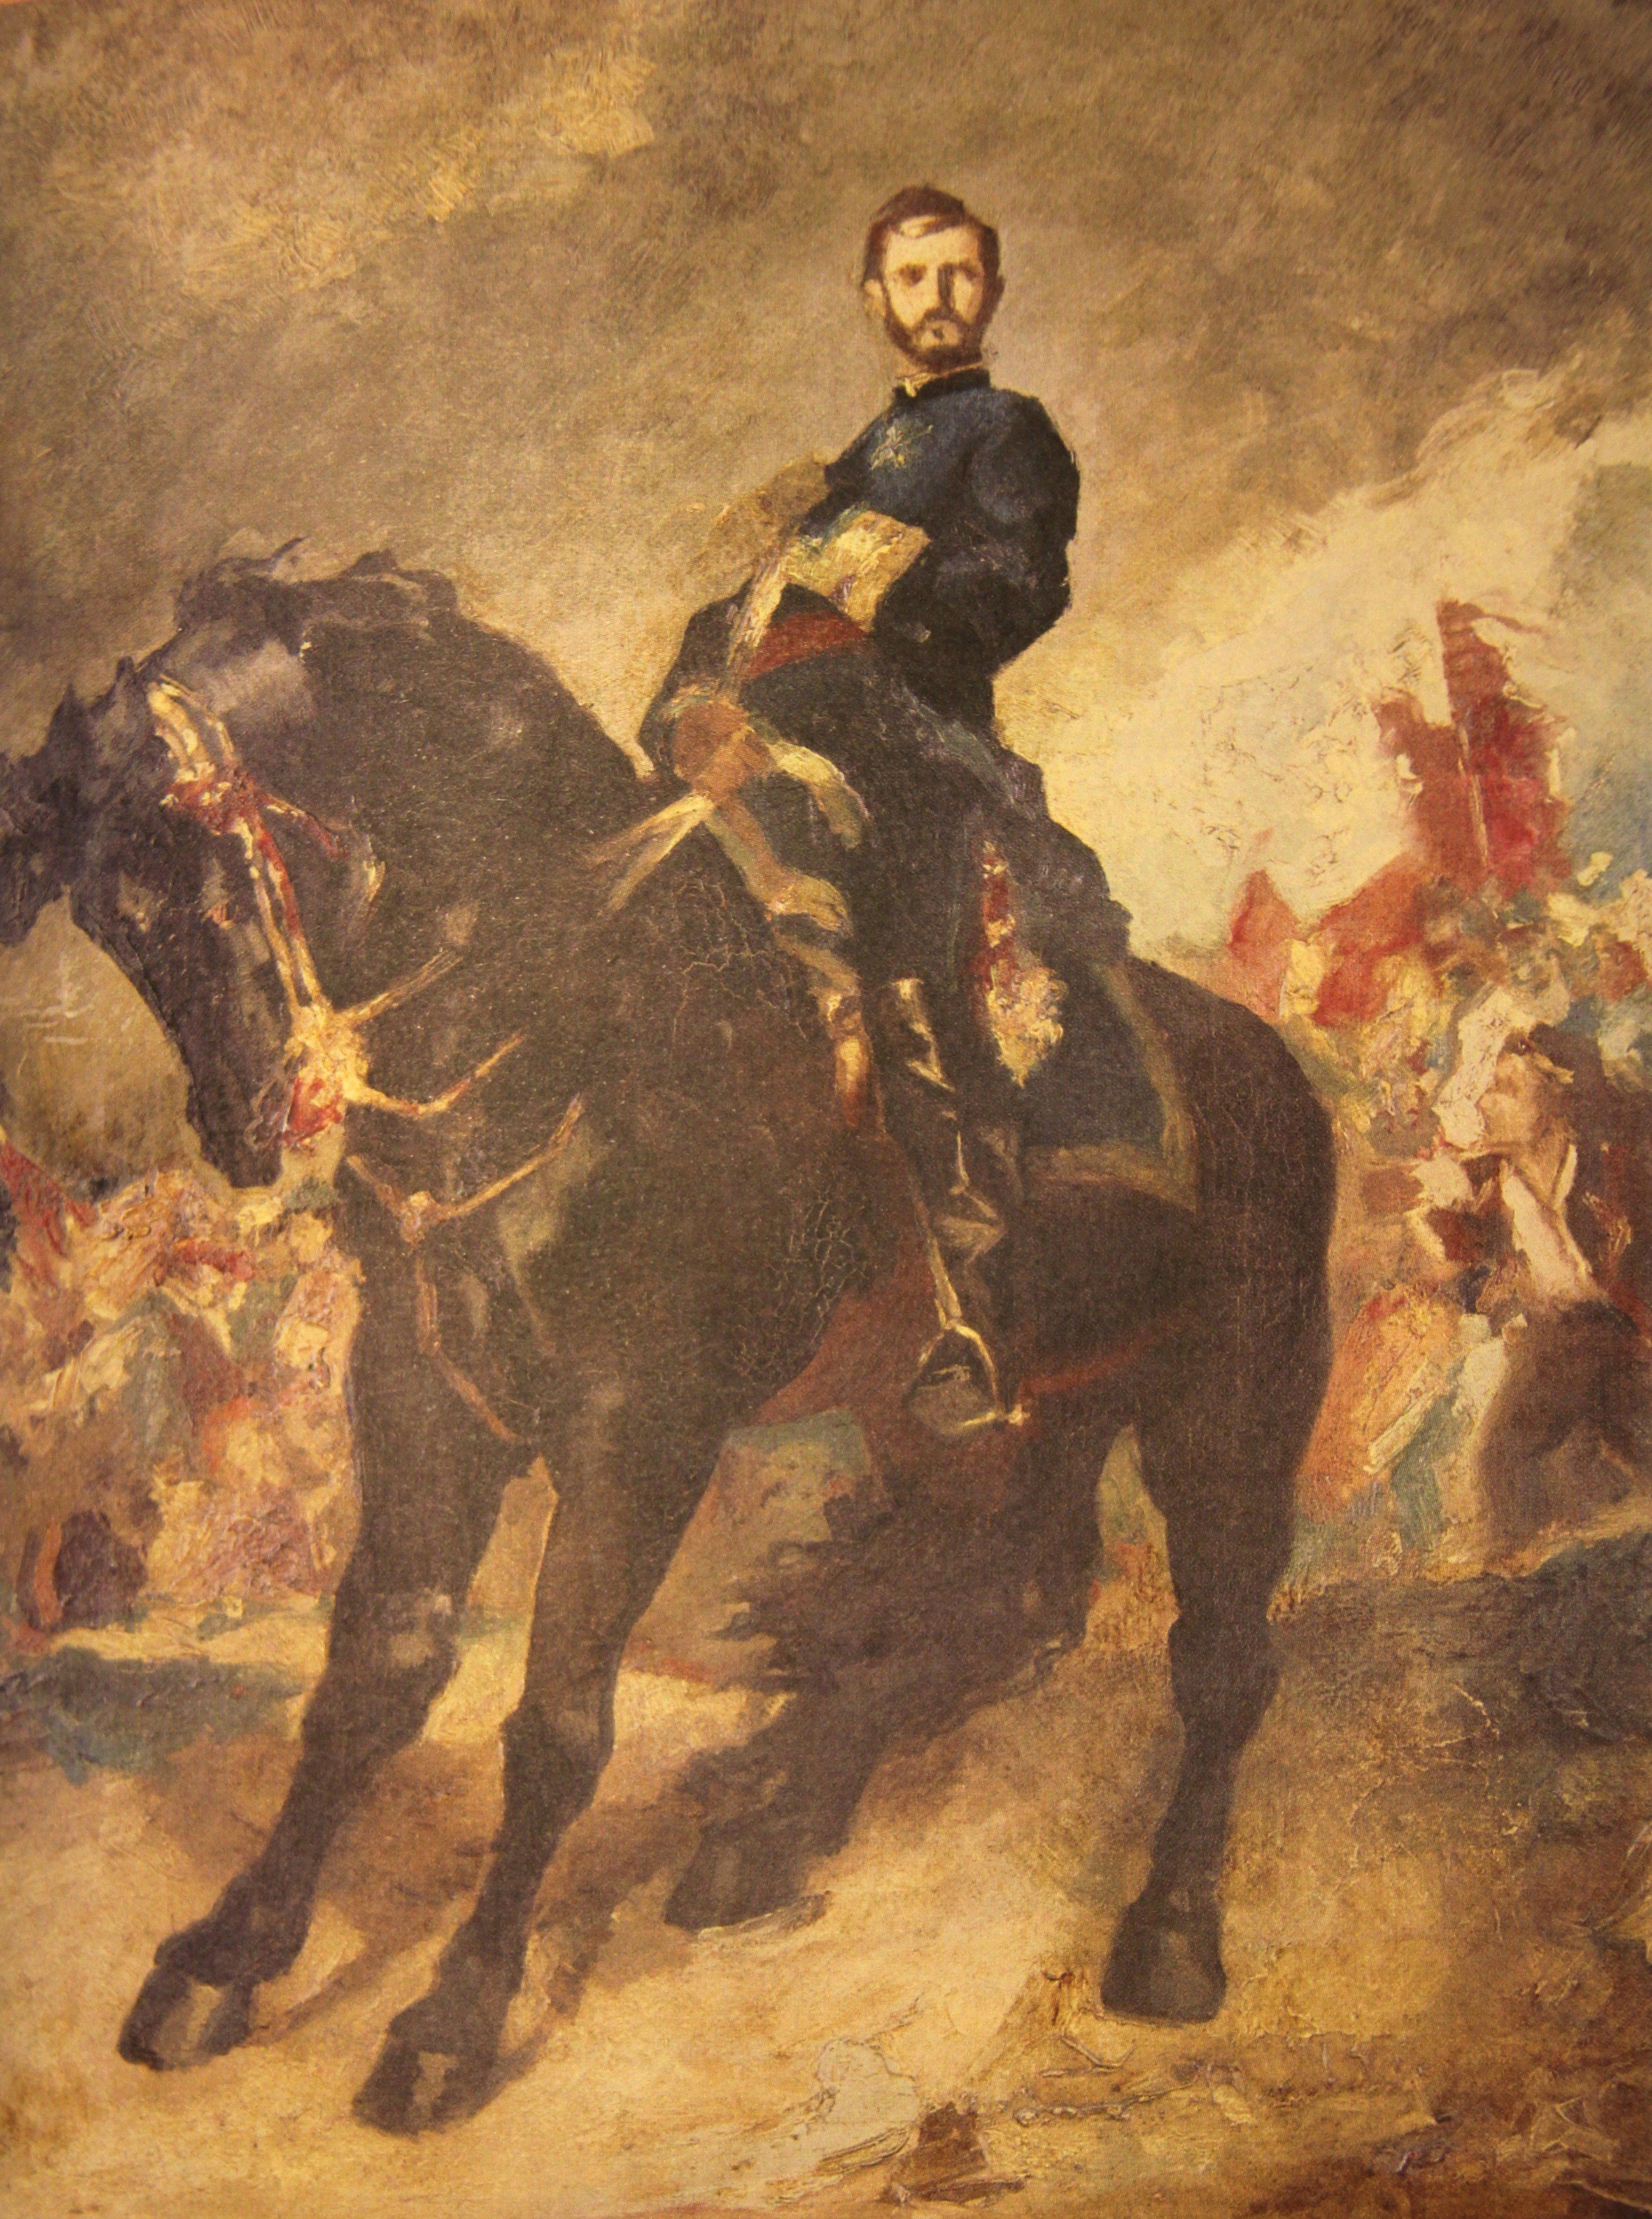 Atribuido a henri Regnault. El general Prim, a caballo, en la batalla de los Castillejos, después de 1869. Museo Nacional del Prado